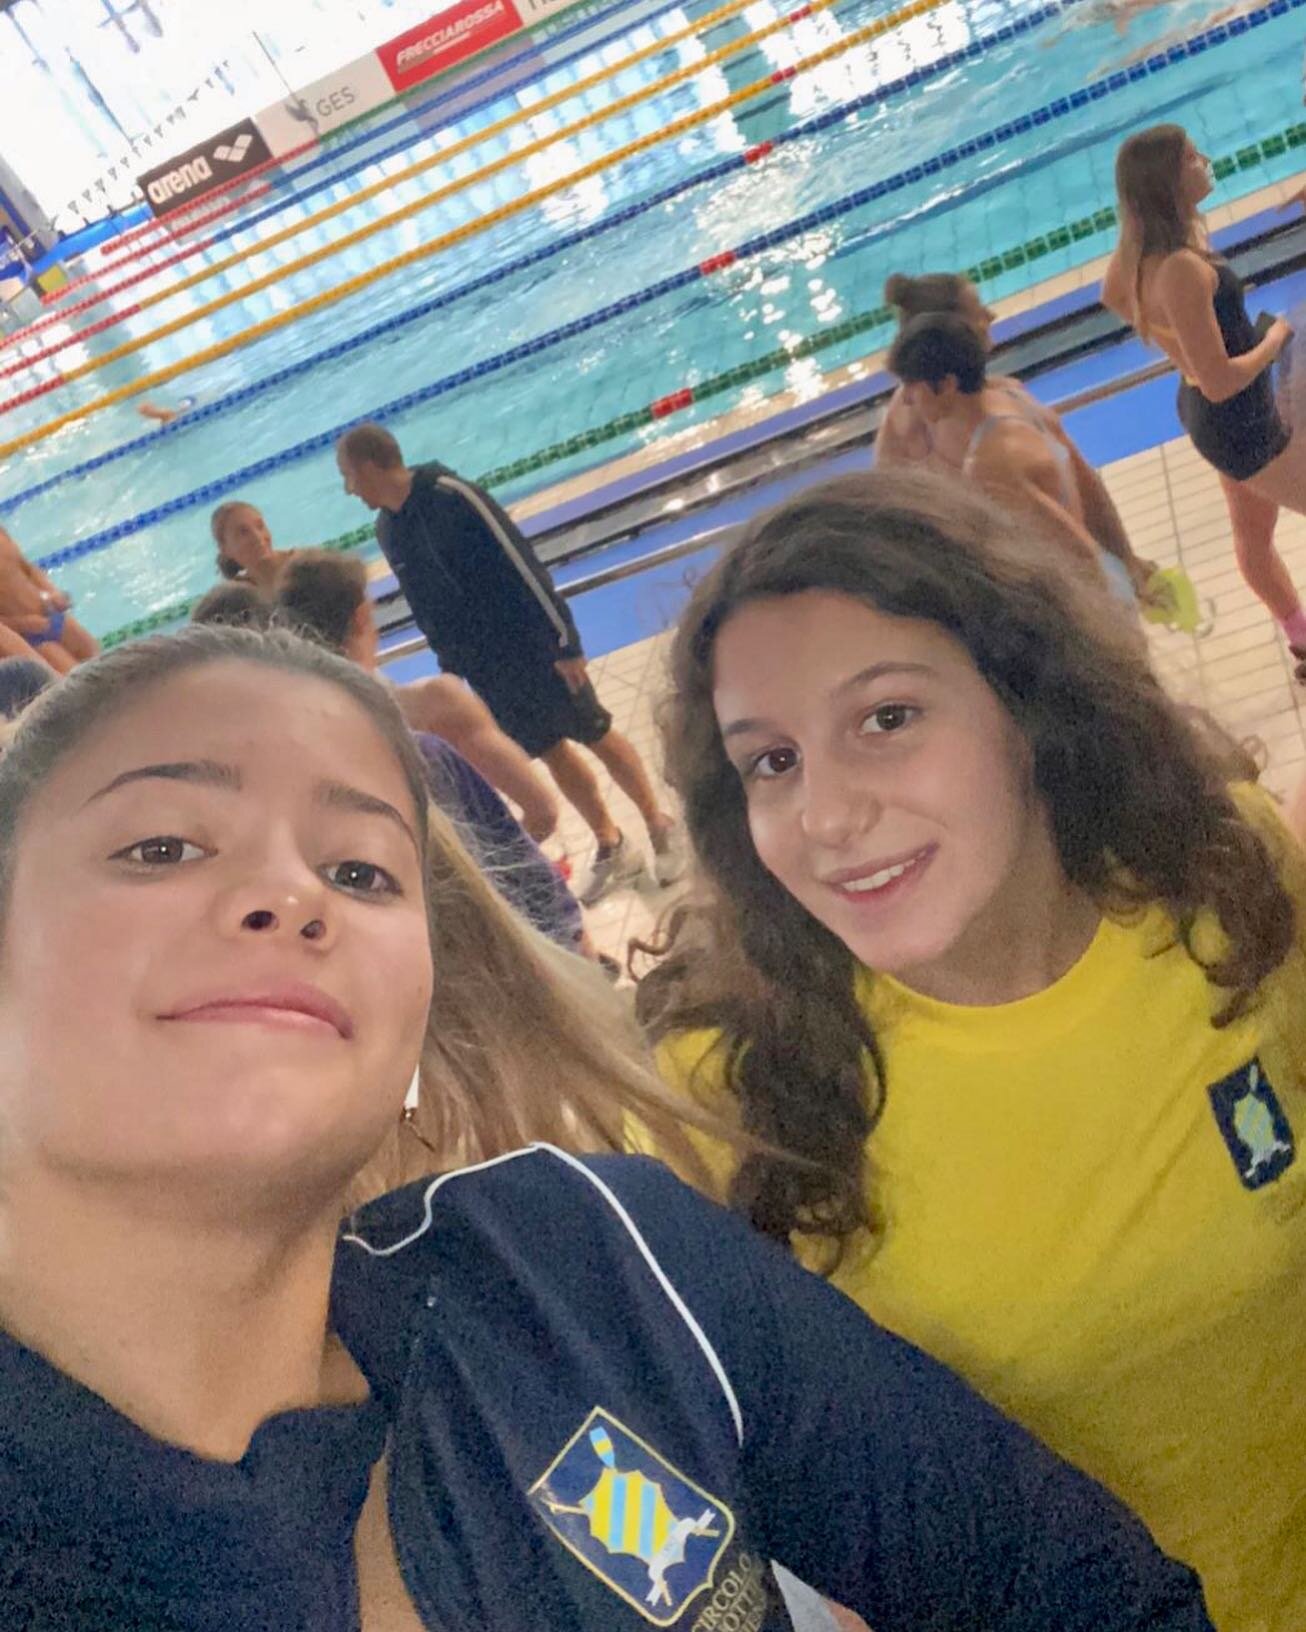 ❗️ #NUOTO ❗️

🌟 Le nostre stelle del nuoto, Claudia Di Passio e Asia Losito, hanno iniziato un nuovo e entusiasmante capitolo nella loro carriera. Da quest'anno, si sono unite al prestigioso club C.C. Aniene, ma continueranno a essere guidate dal no